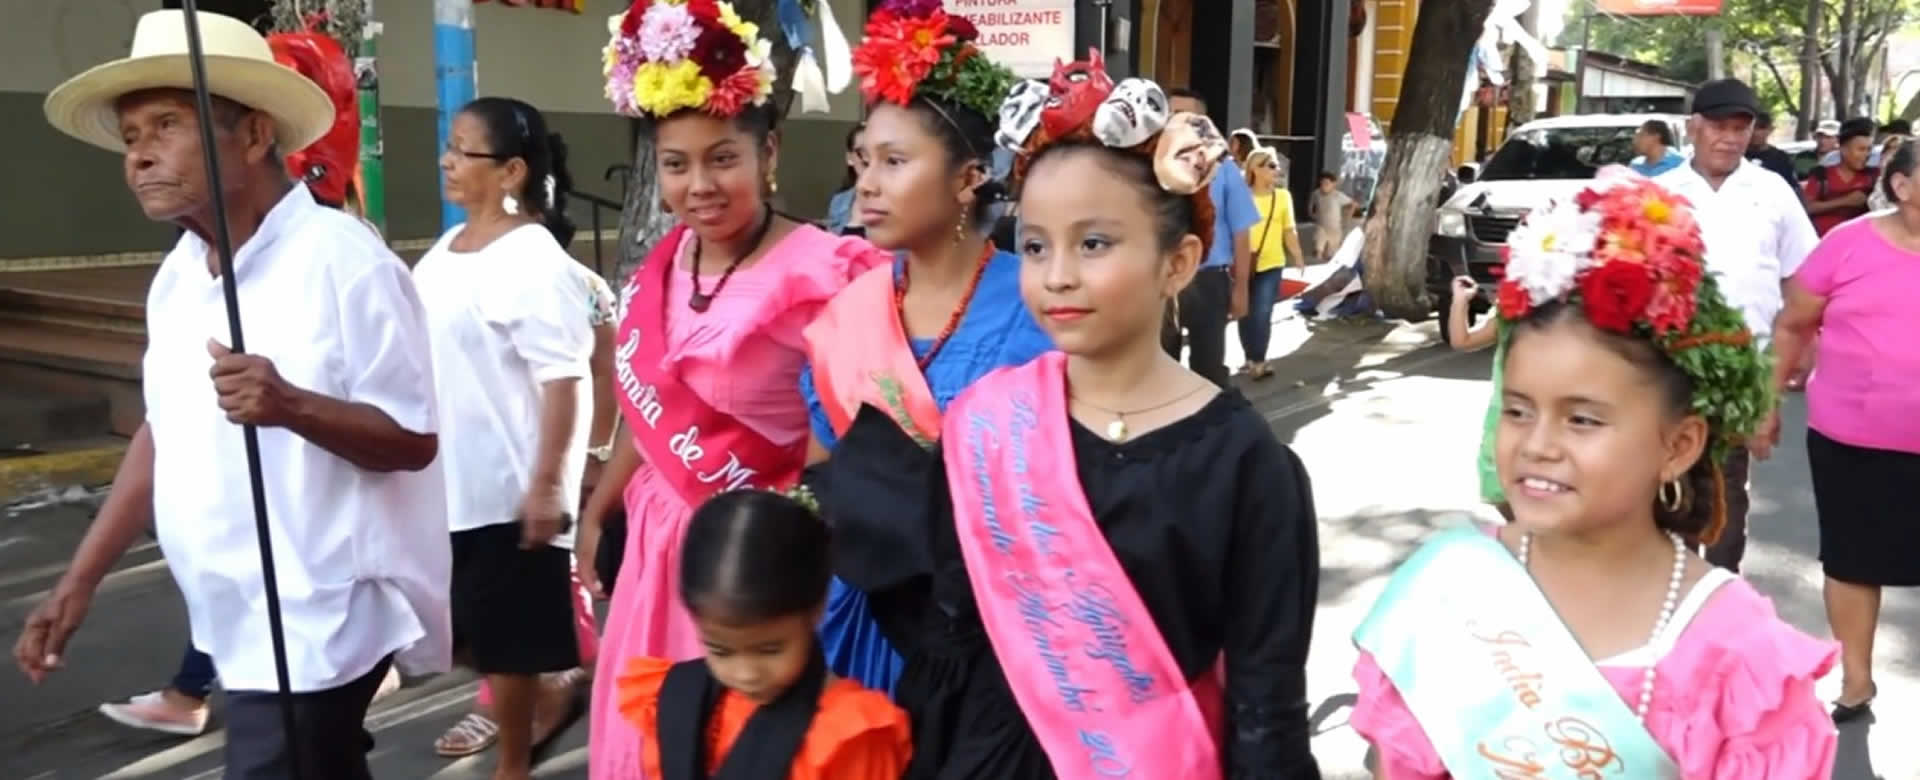 Masaya conmemora el Día de la Resistencia Indígena con un colorido carnaval